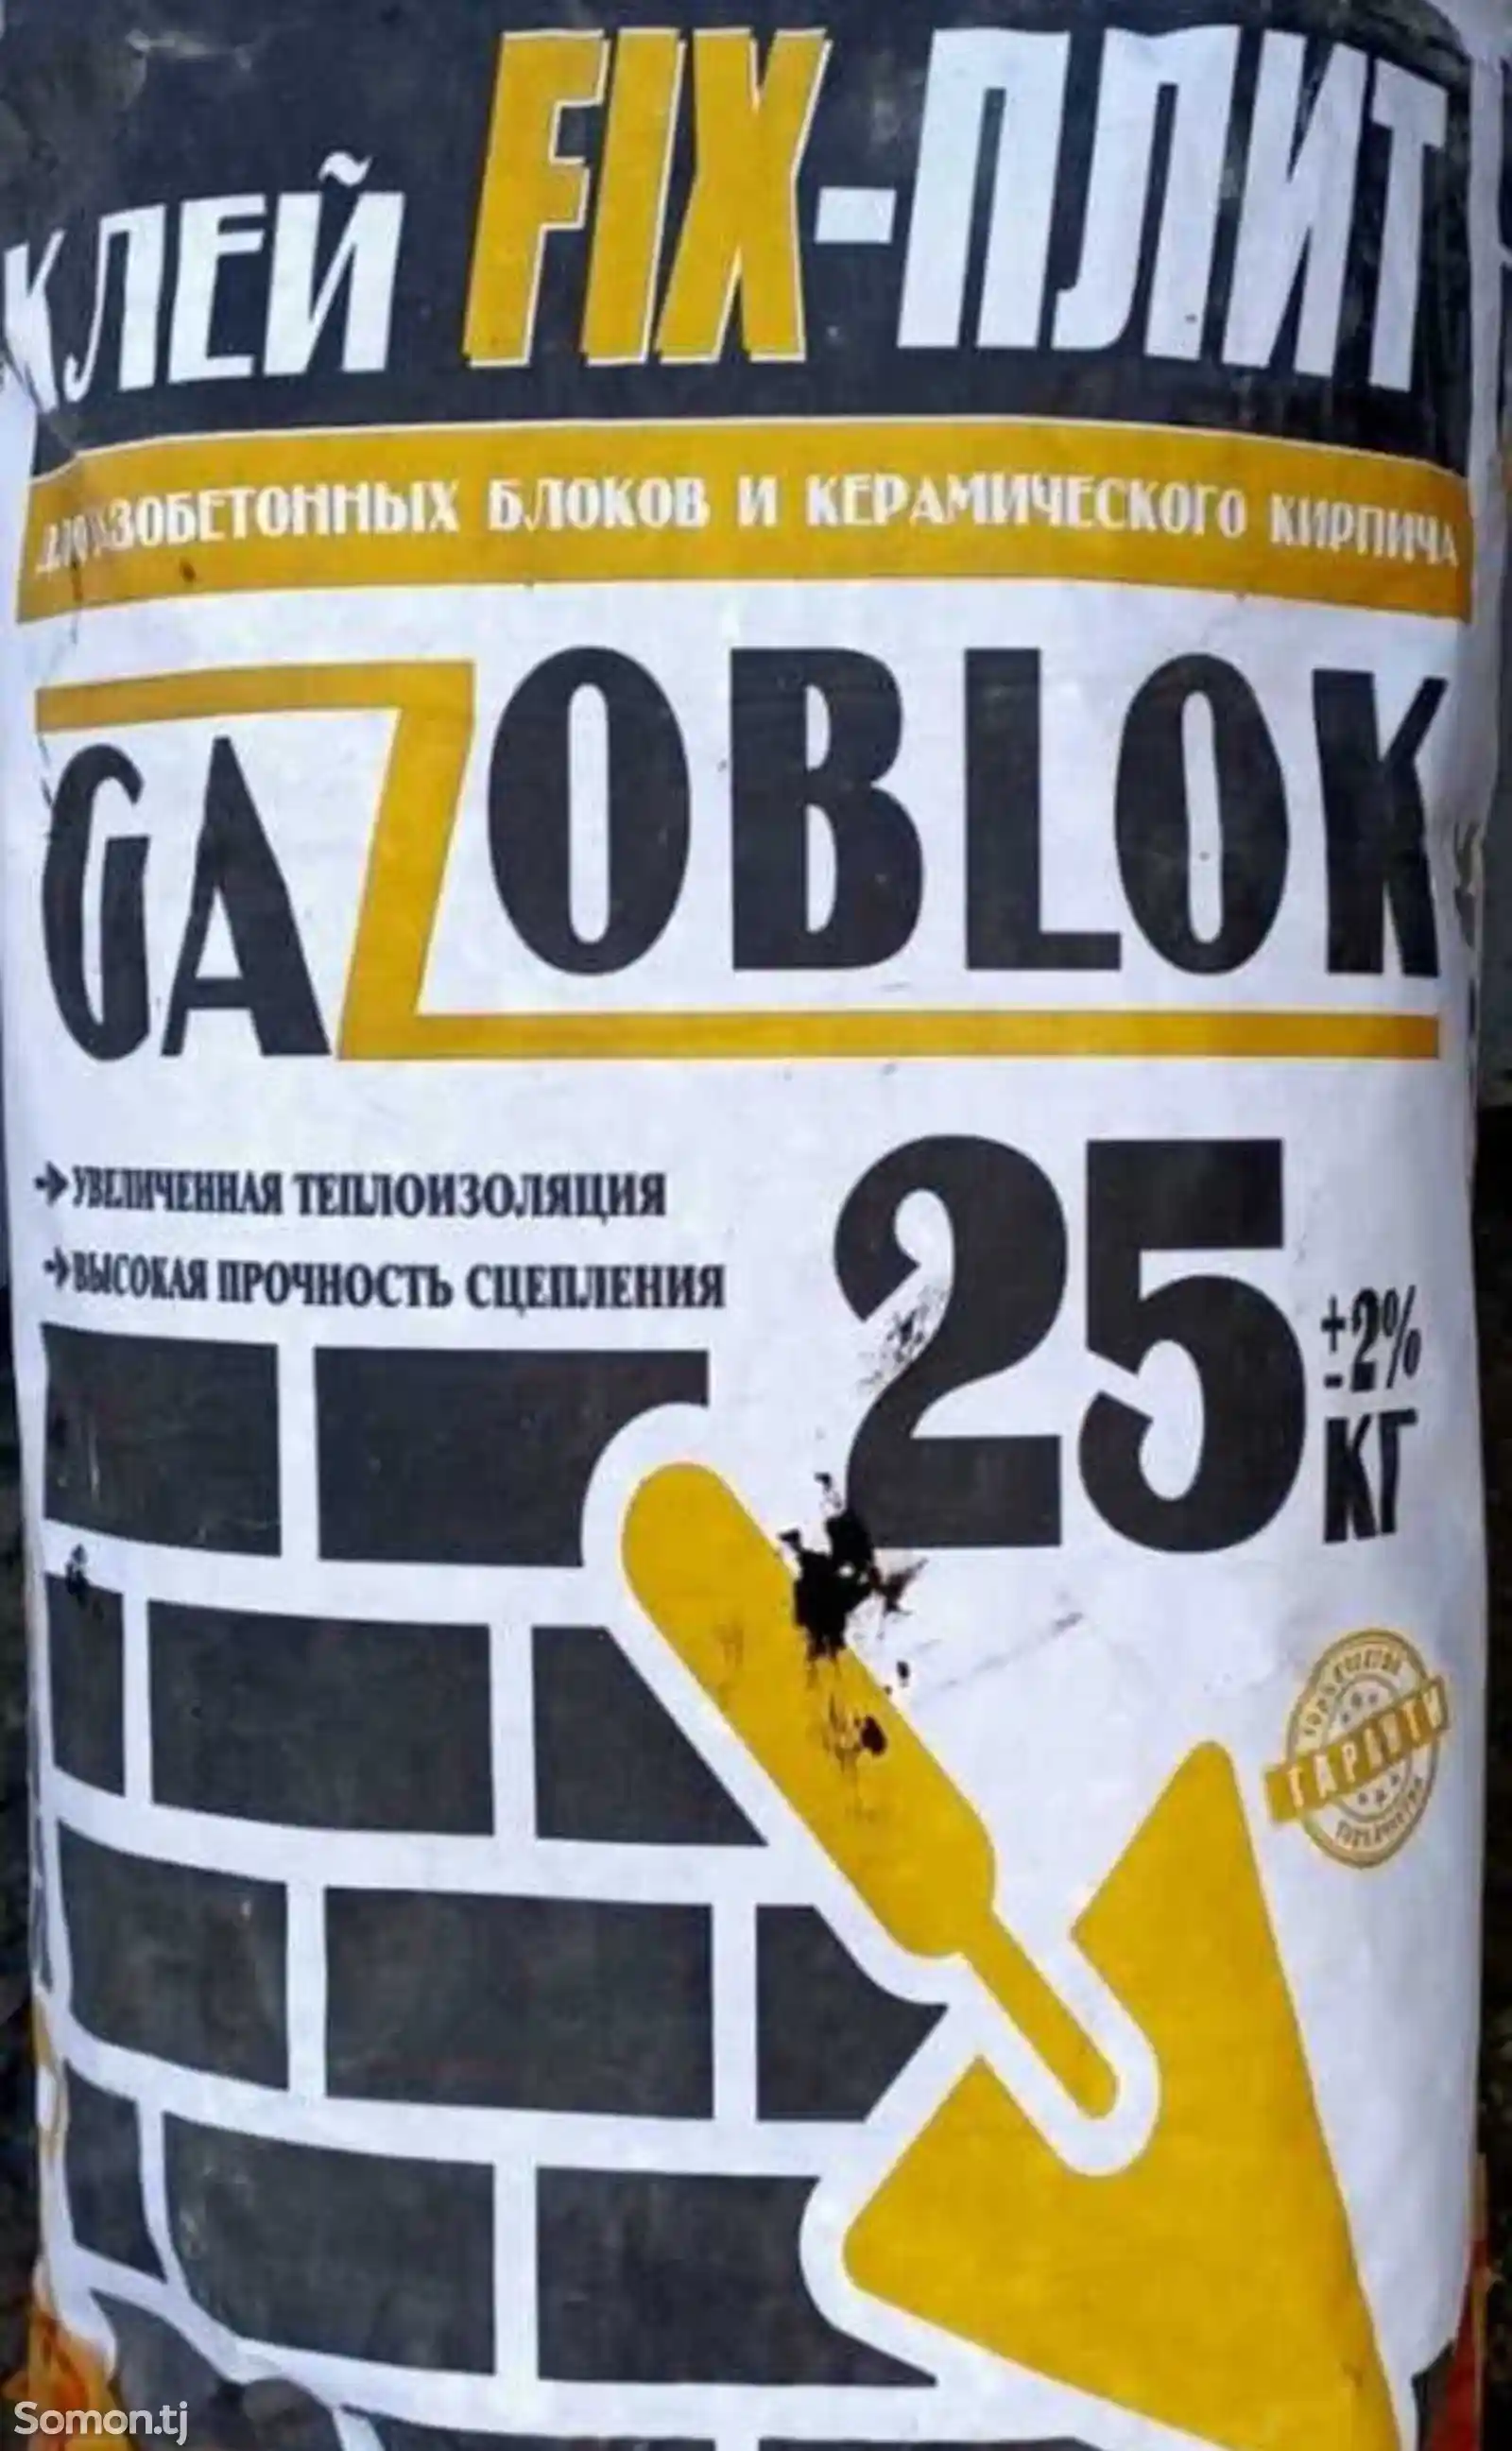 Клей Gazoblok